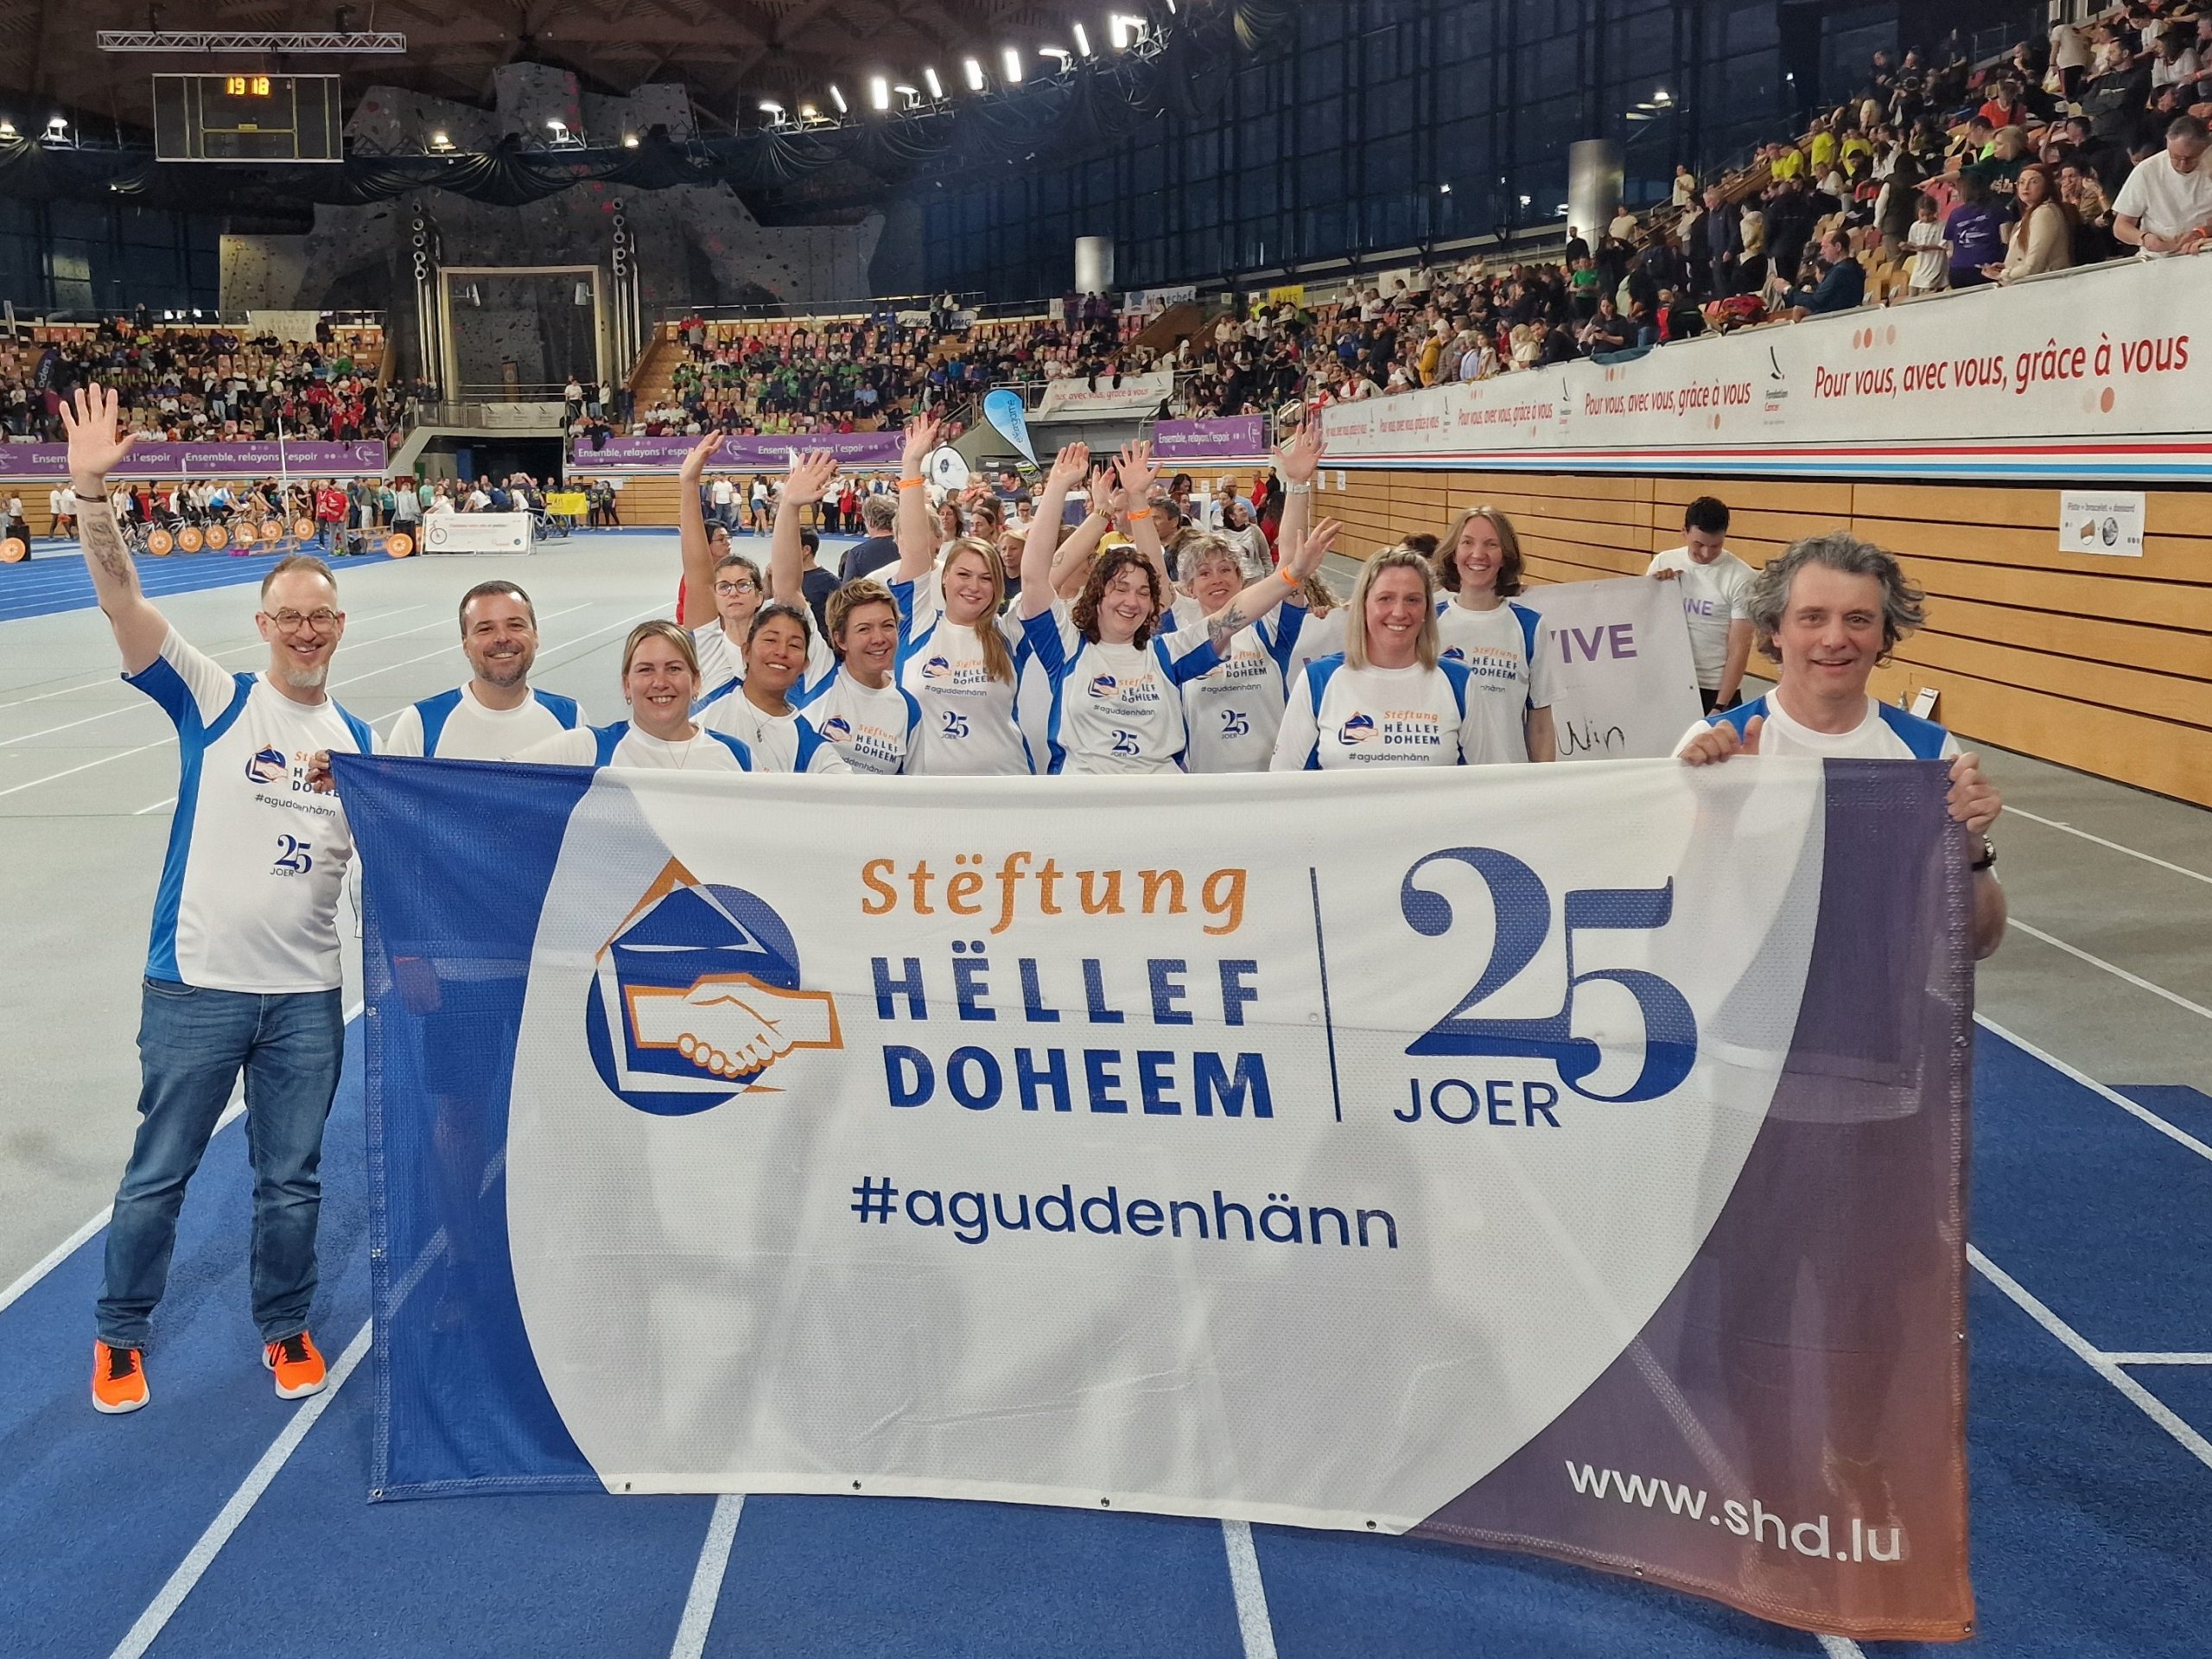 La Stëftung Hëllef Doheem a participé au Relais pour la vie 2024 #relais24lux, démontrant son engagement dans la lutte contre le cancer. Nos équipes ont montré leur solidarité lors de cet événement de 24 heures, soulignant notre soutien continu envers les personnes touchées.